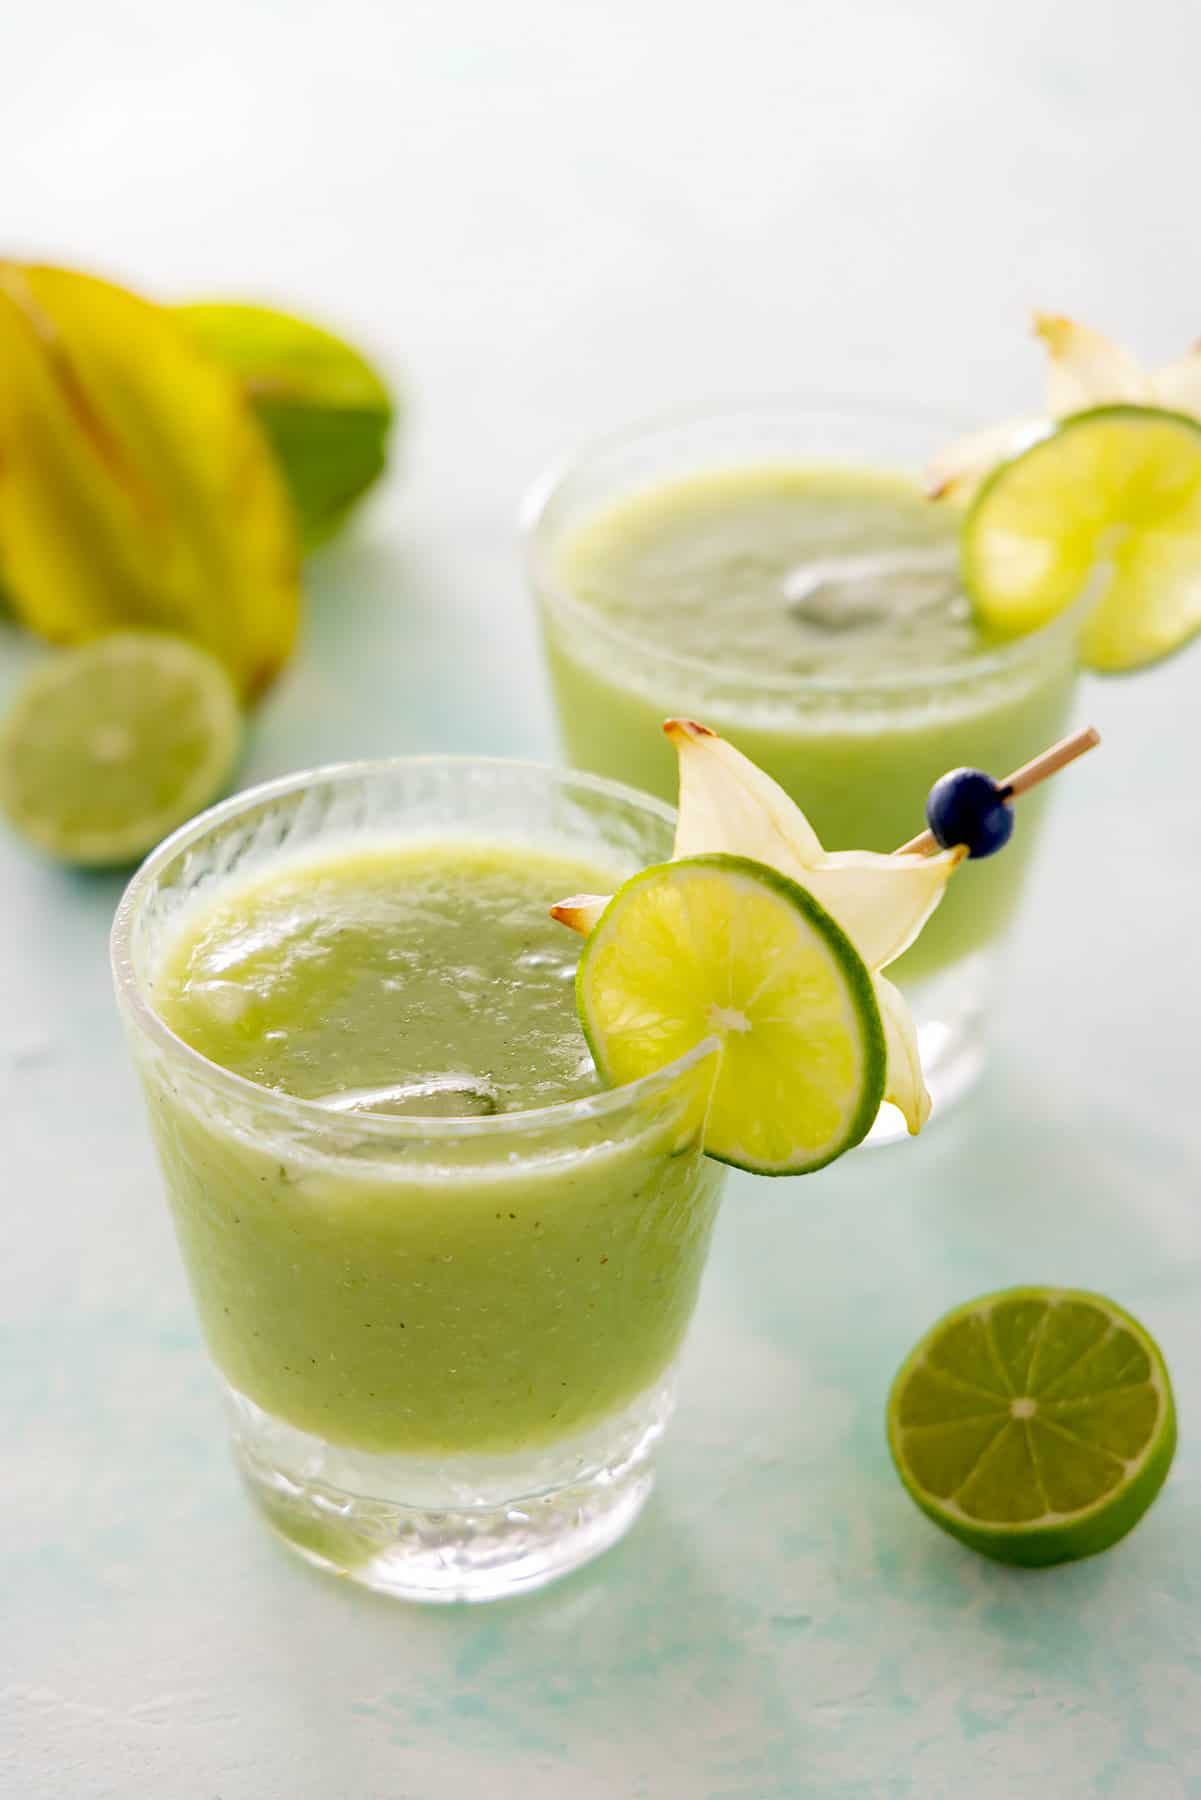 2 glasses of Starbucks-inspired lemonade kiwi starfruit refresher mocktail.